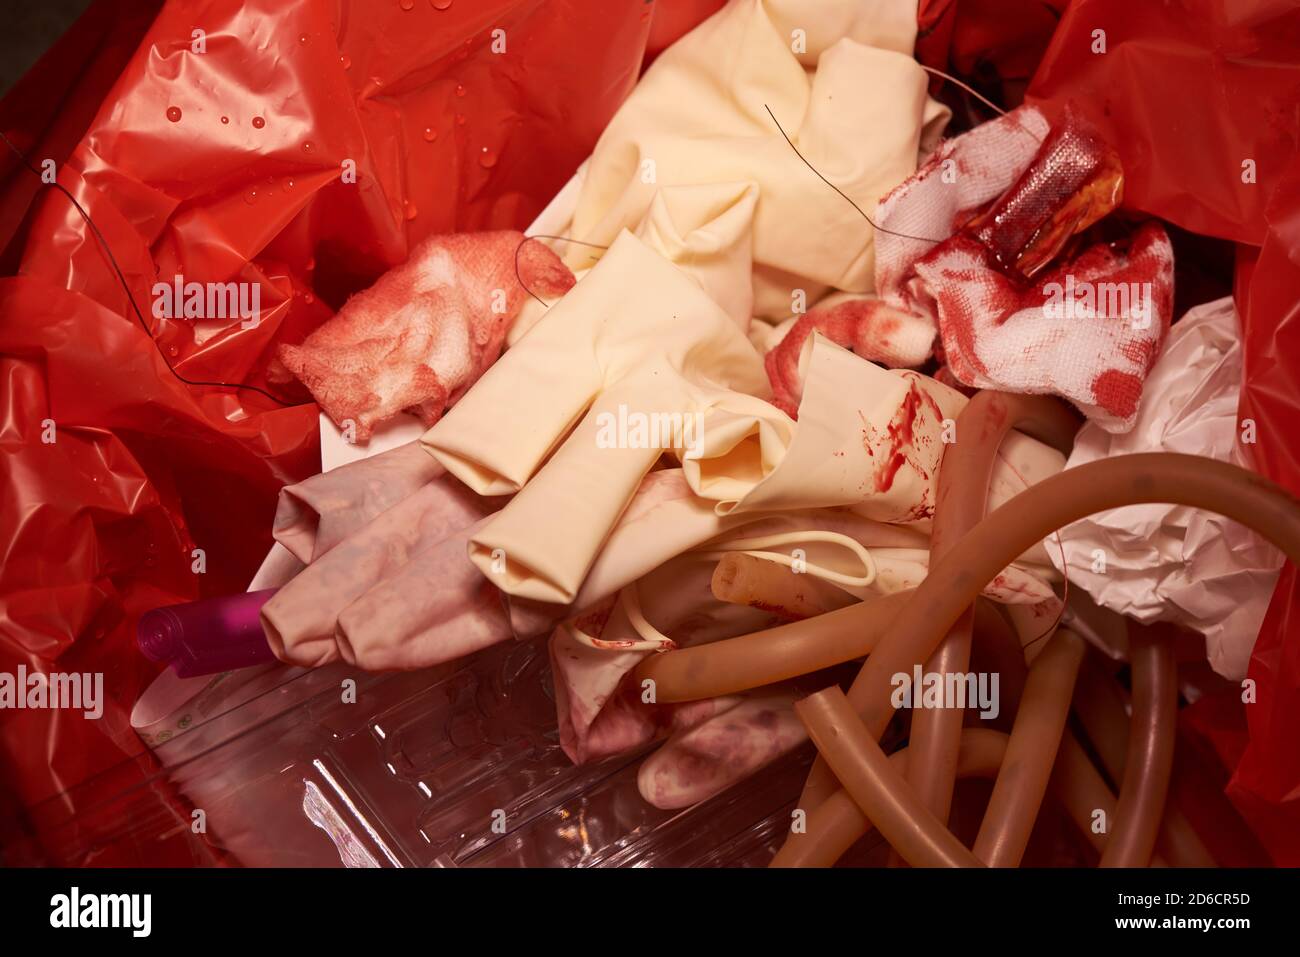 Vue rapprochée des gants jetables, des gazons souillés de sang, des sutures  et des suctionsaprès la chirurgie dans les ordures rouges Photo Stock -  Alamy